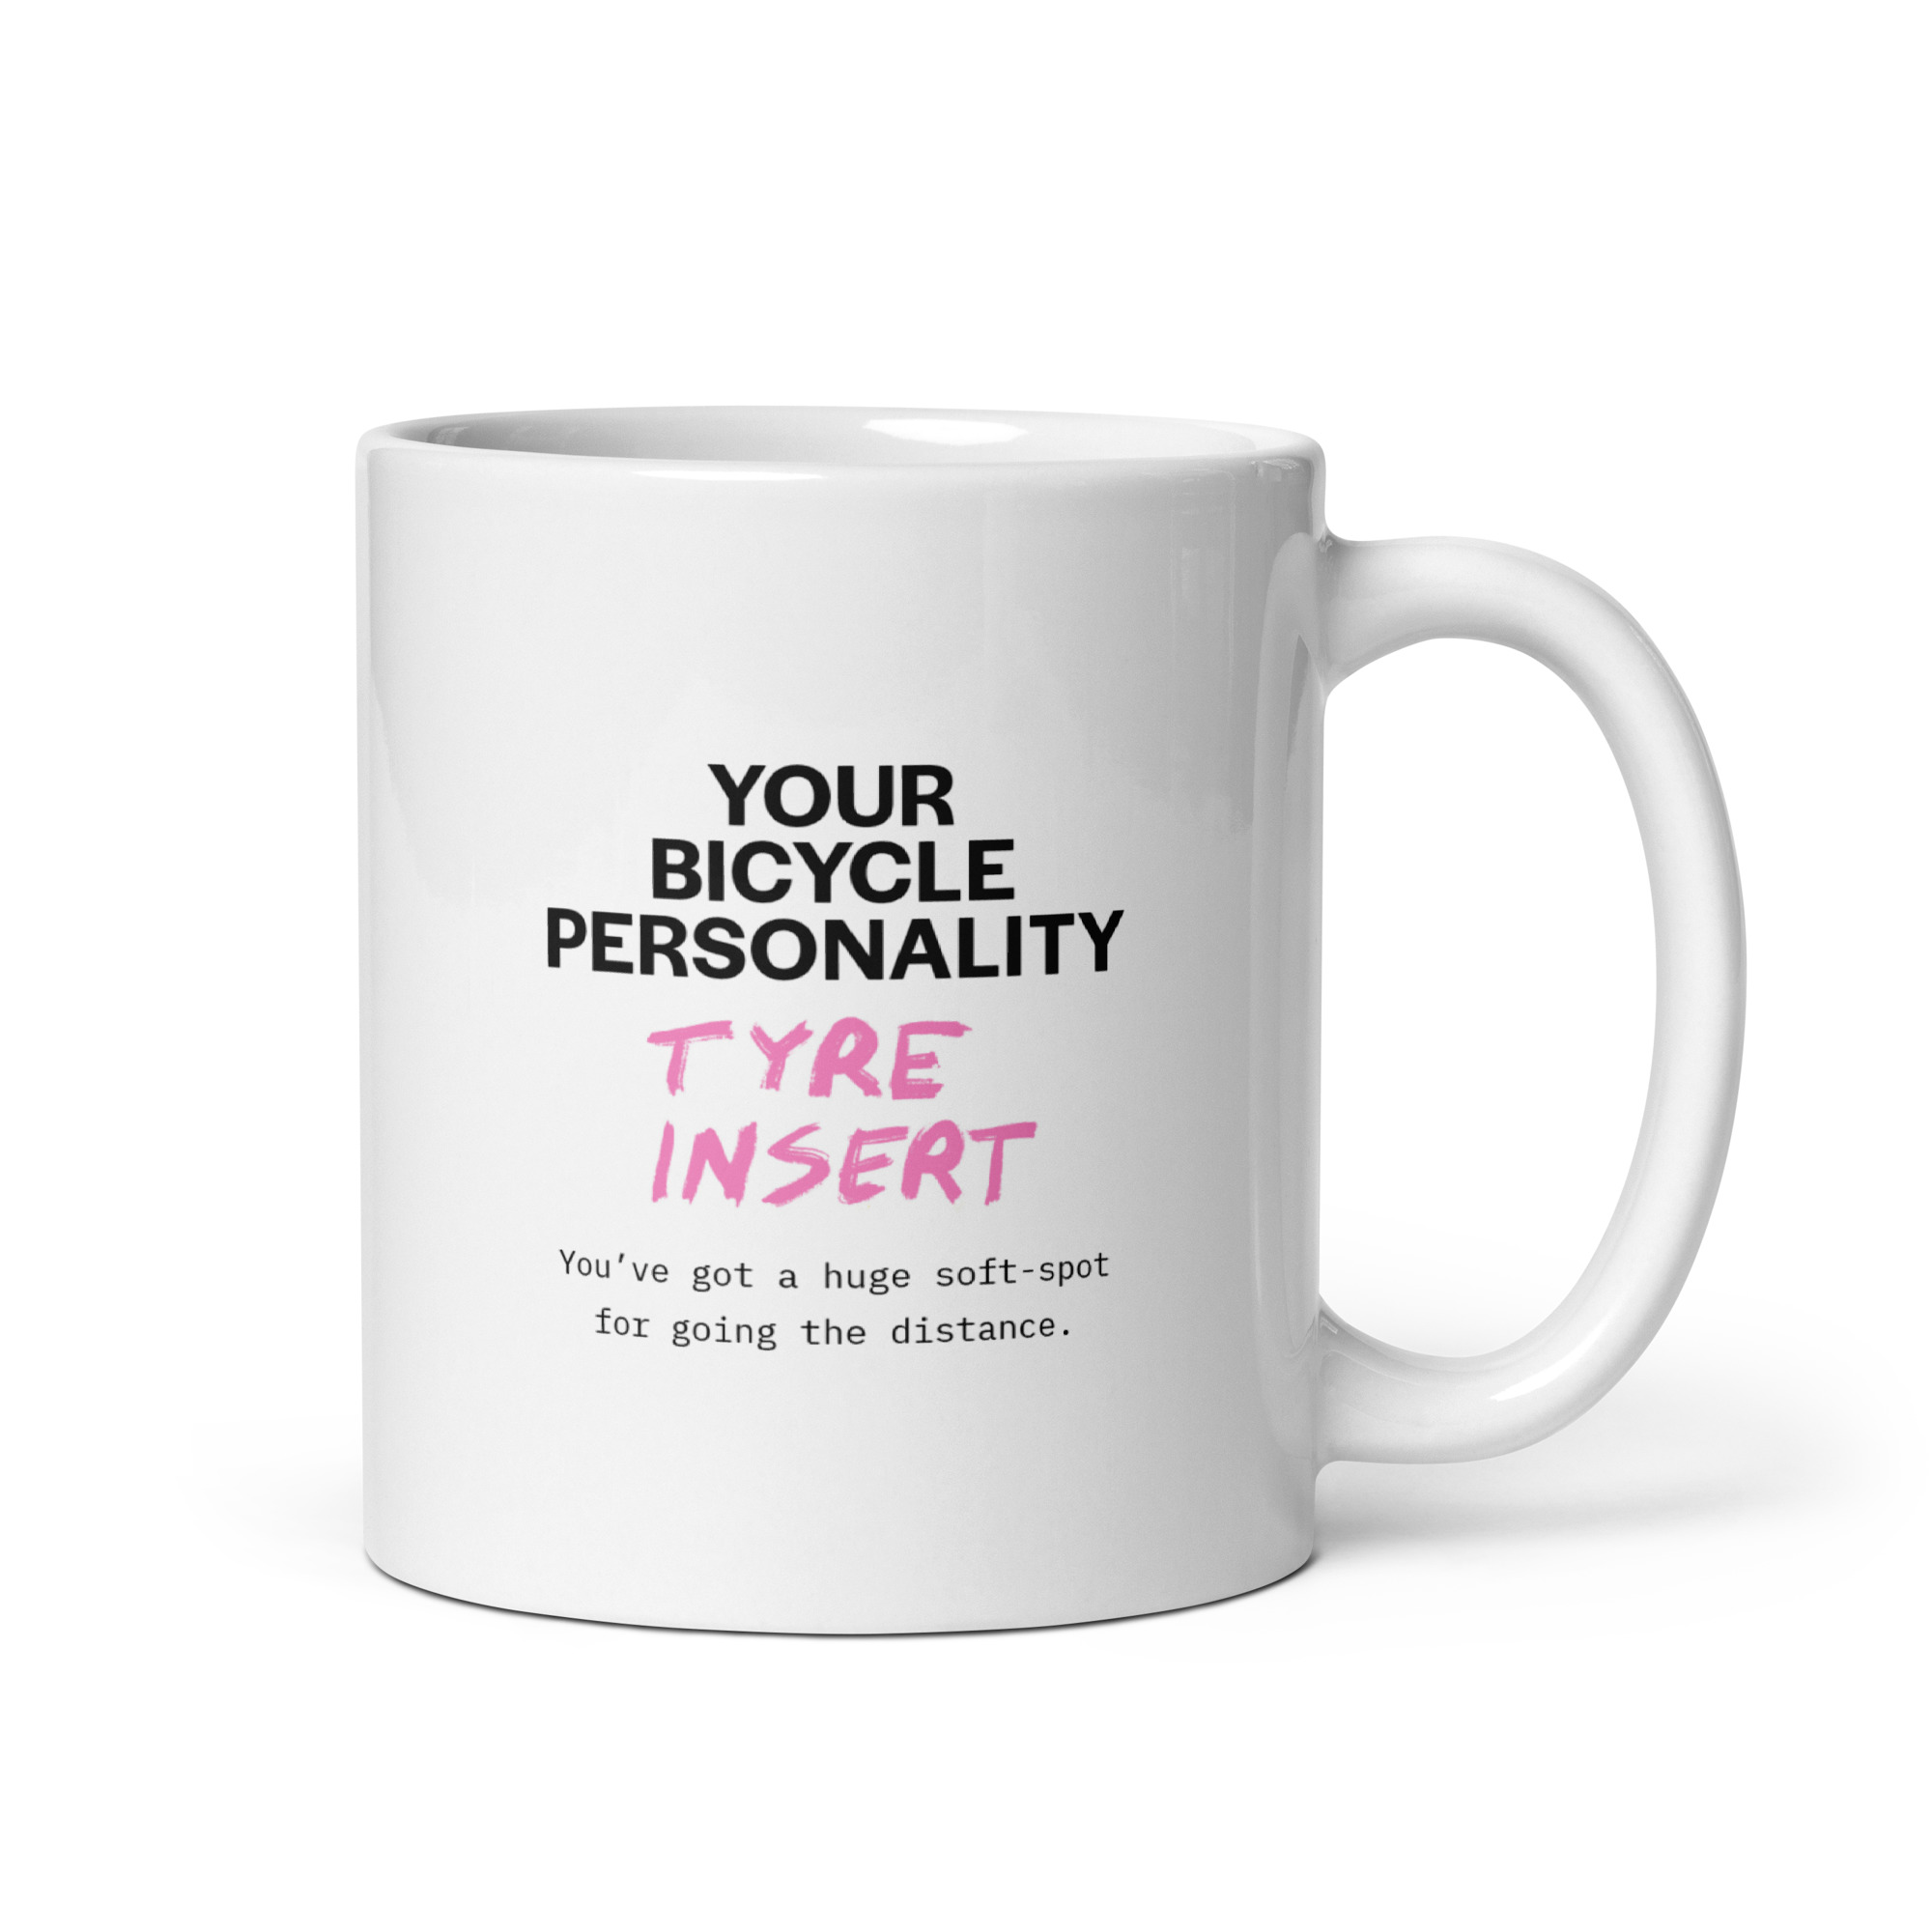 tyre-insert-mug-bike-personality-test